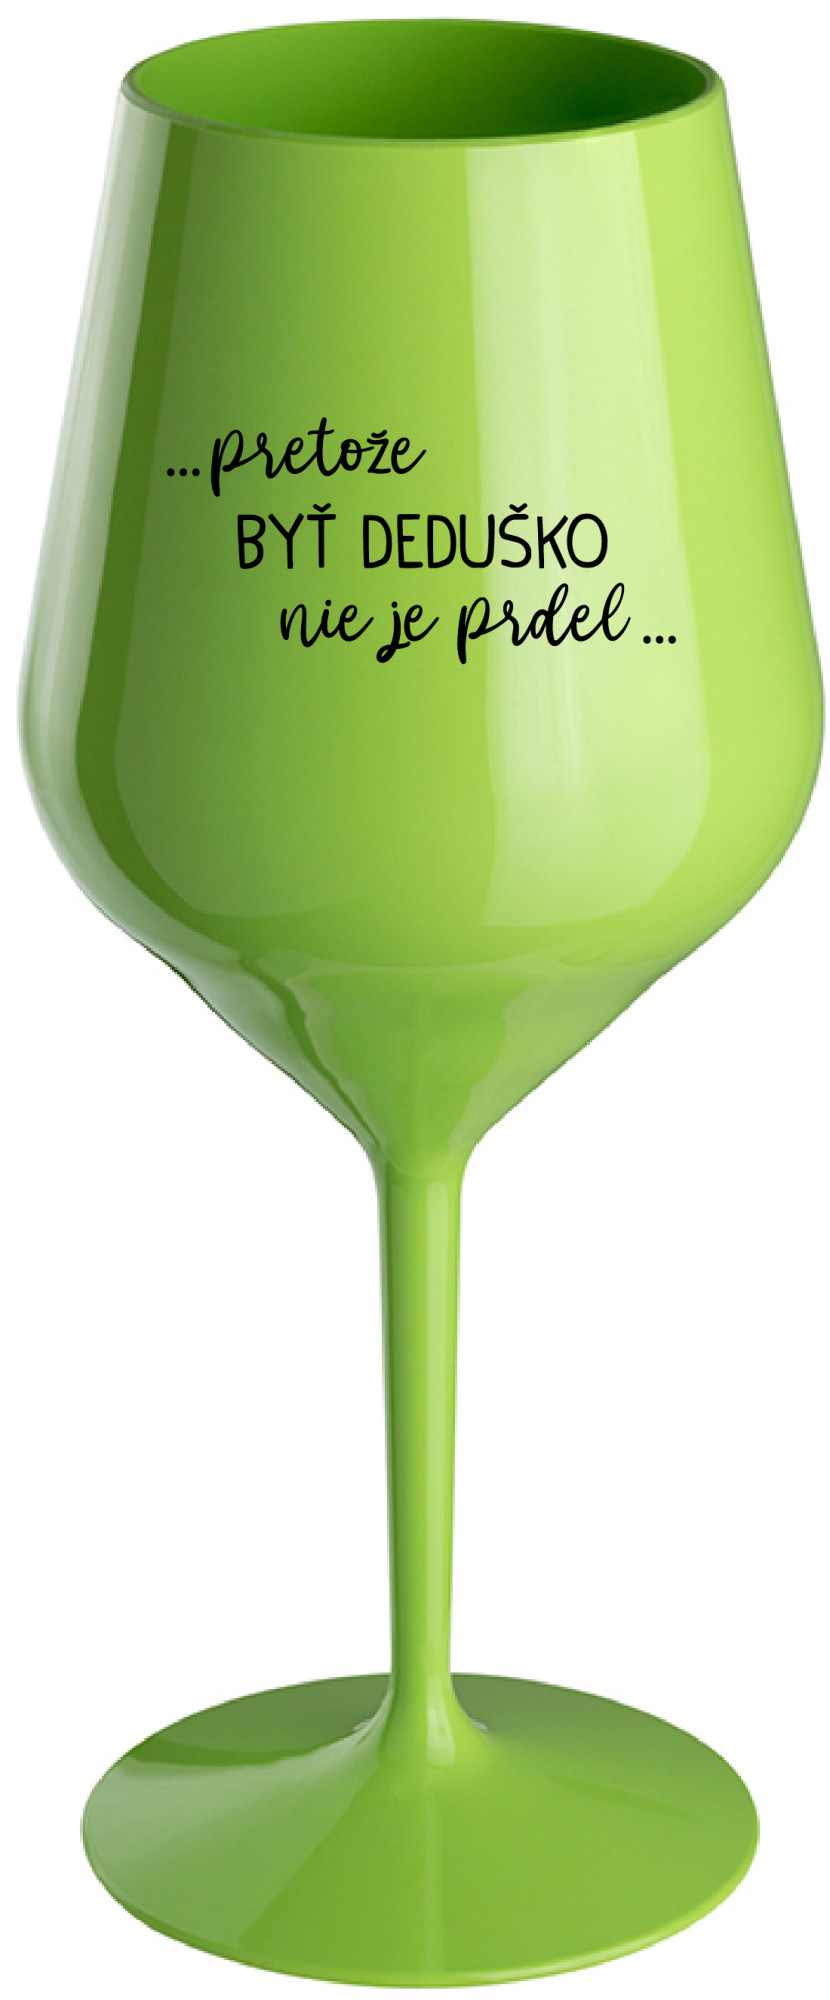 ...PRETOŽE BYŤ DEDUŠKO NIE JE PRDEL.. - zelená nerozbitná sklenice na víno 470 ml